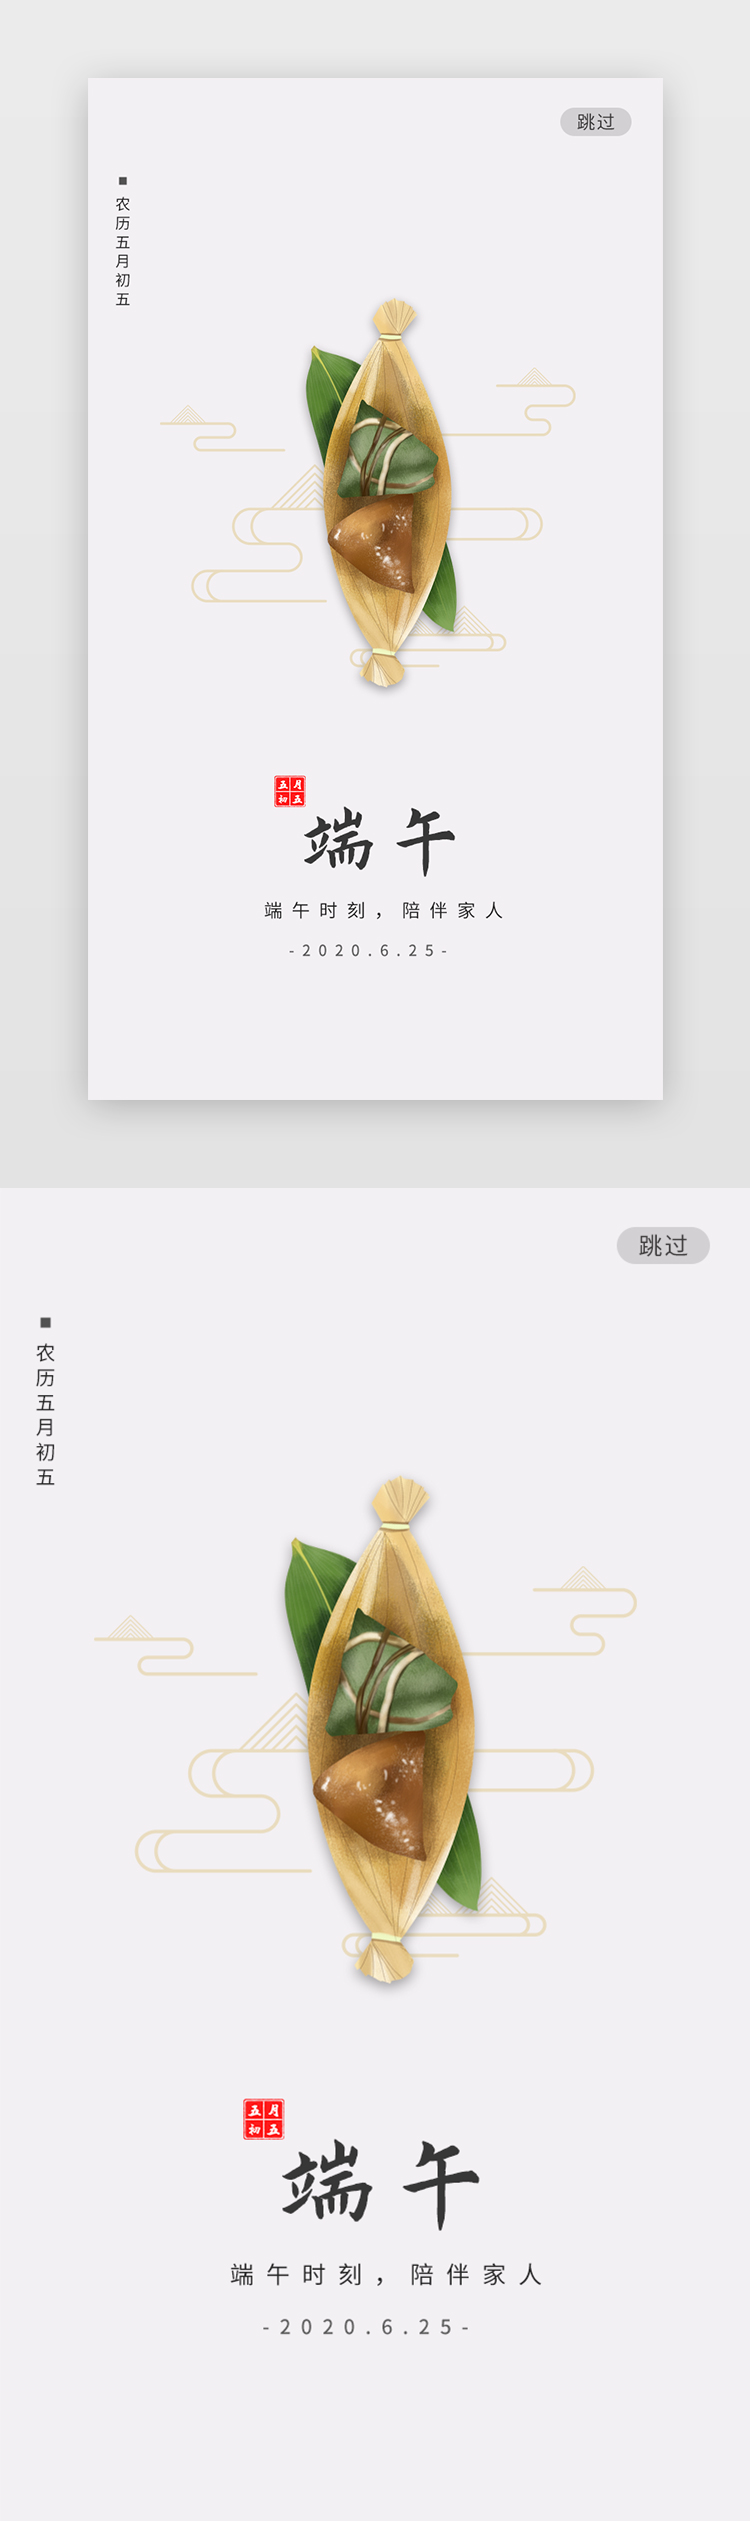 中国风传统节日端午节活动banner图片